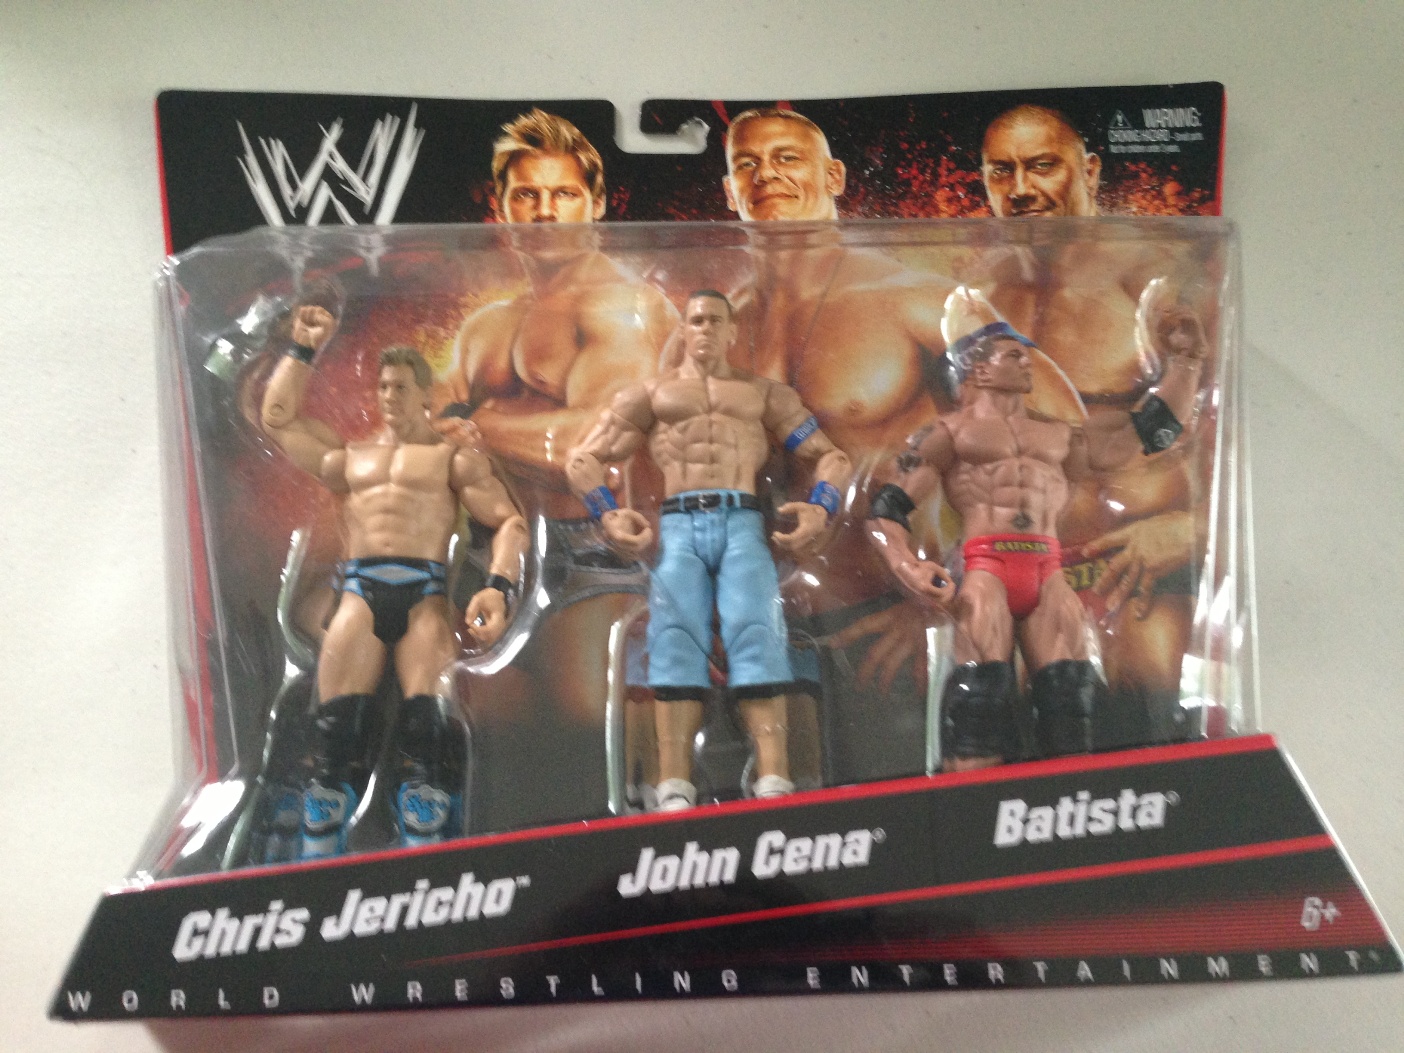 John Cena Batista Chris Jericho